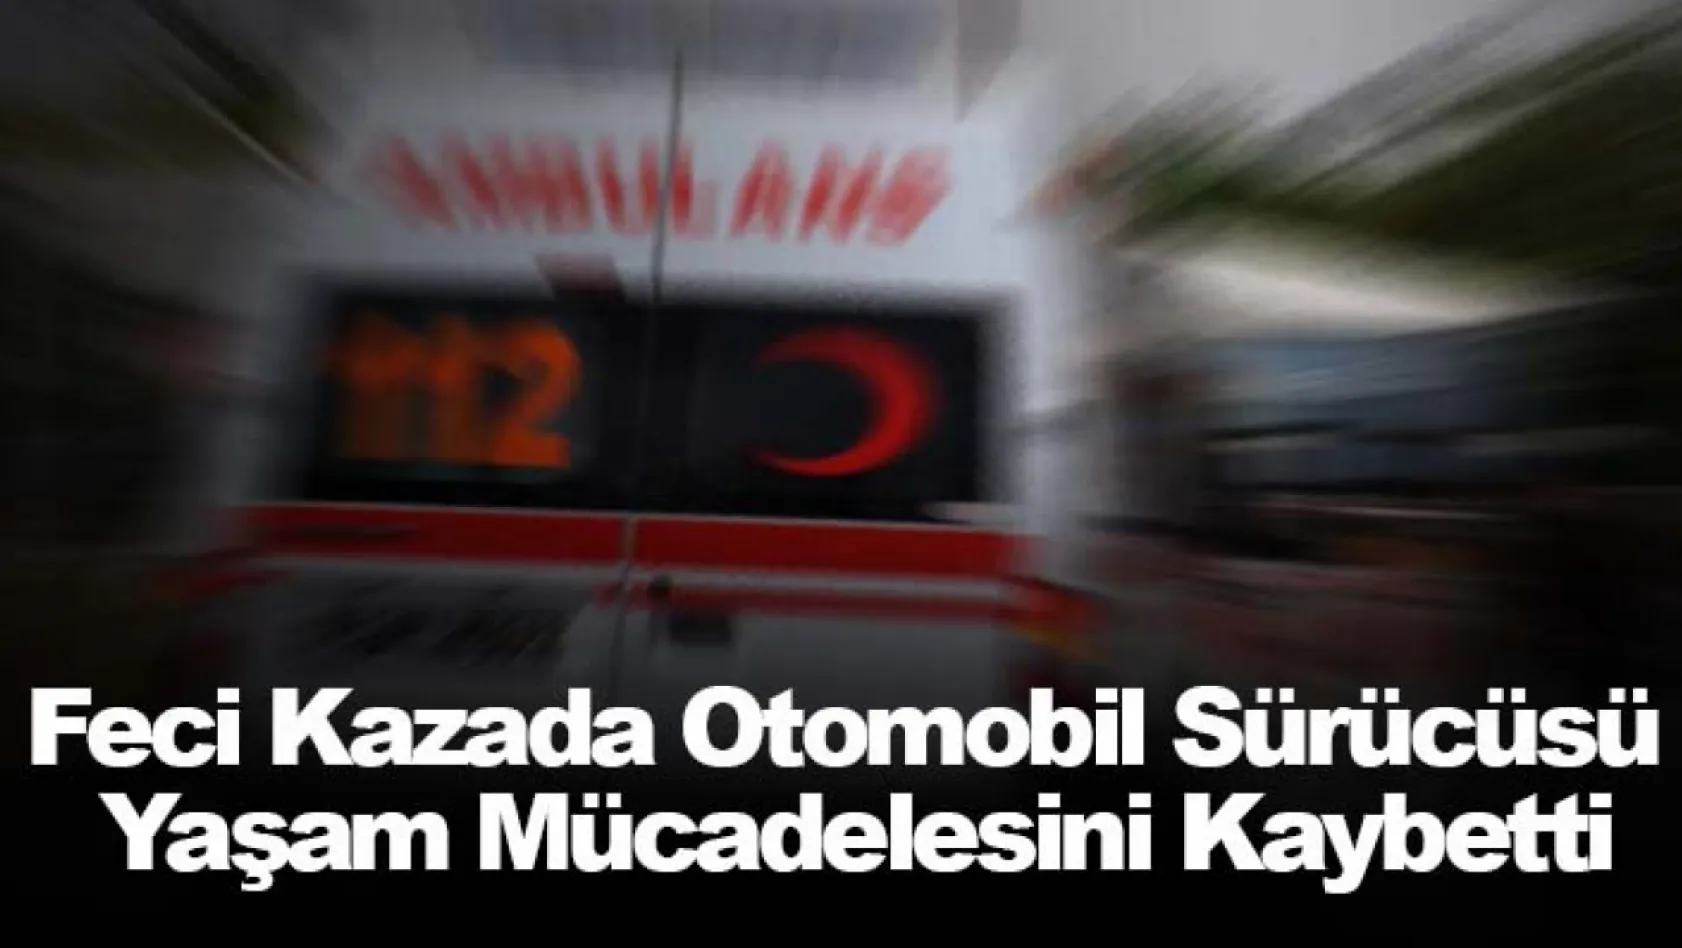 İzmir'deki feci kazada otomobil sürücüsü yaşam mücadelesini kaybetti